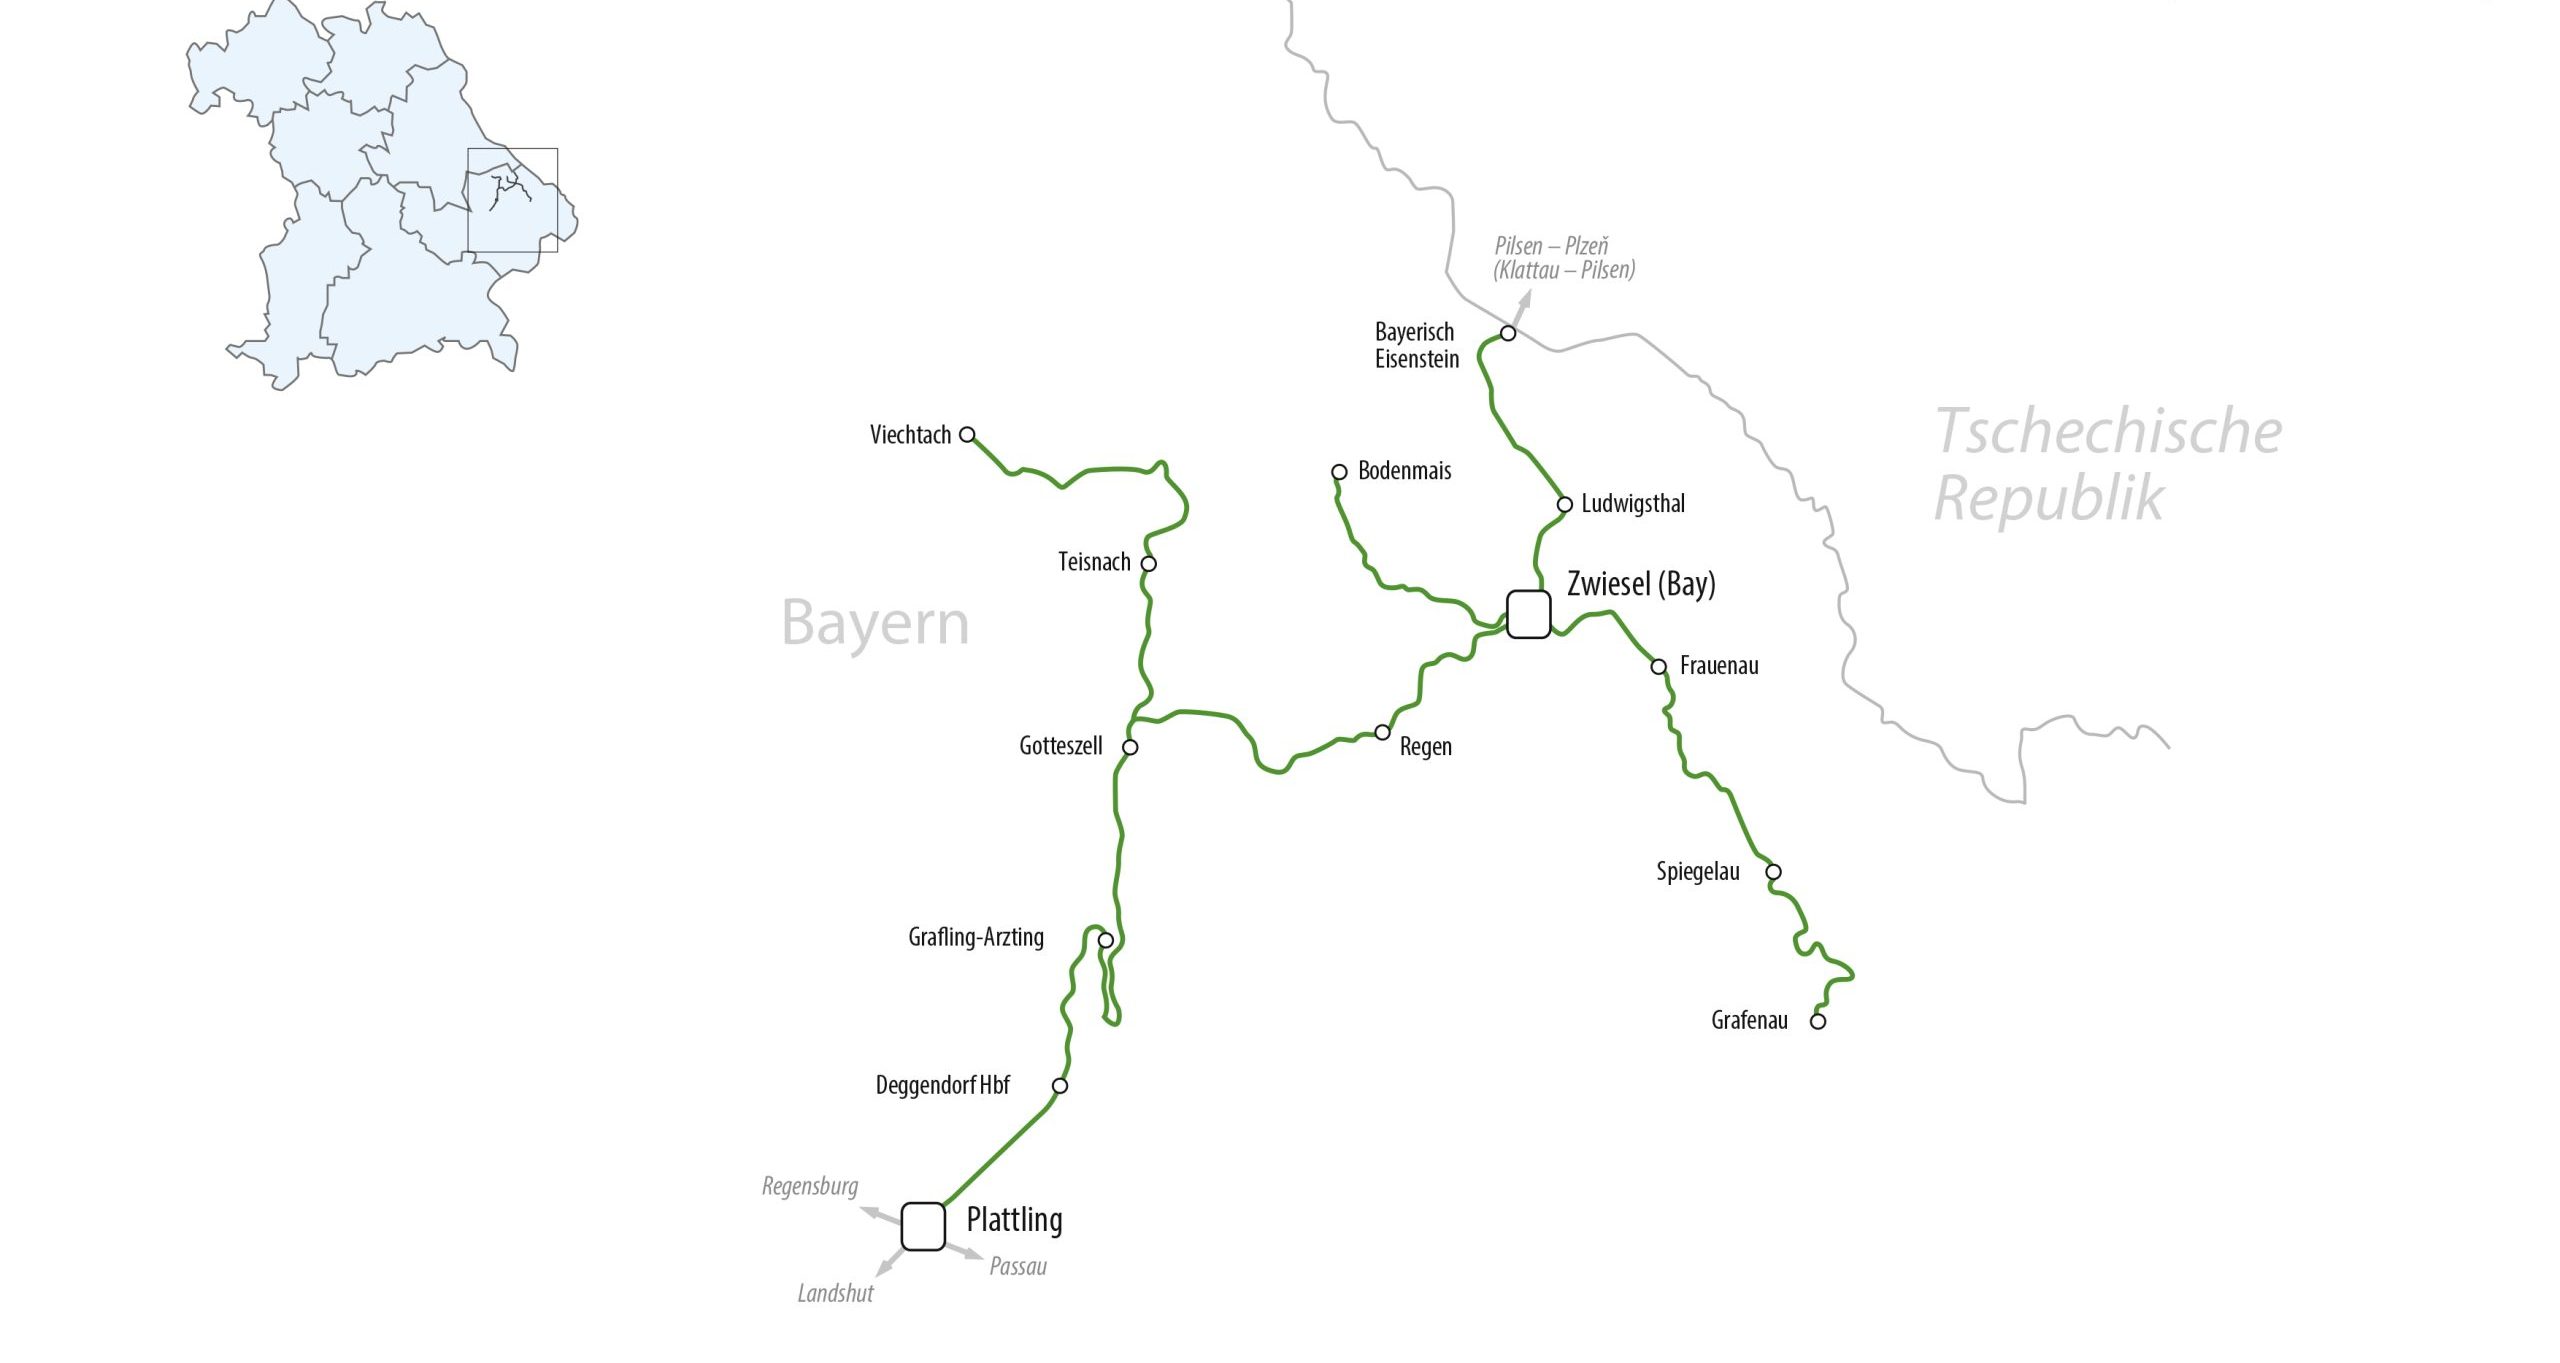 Waldbahn network, Bahnland Bayern